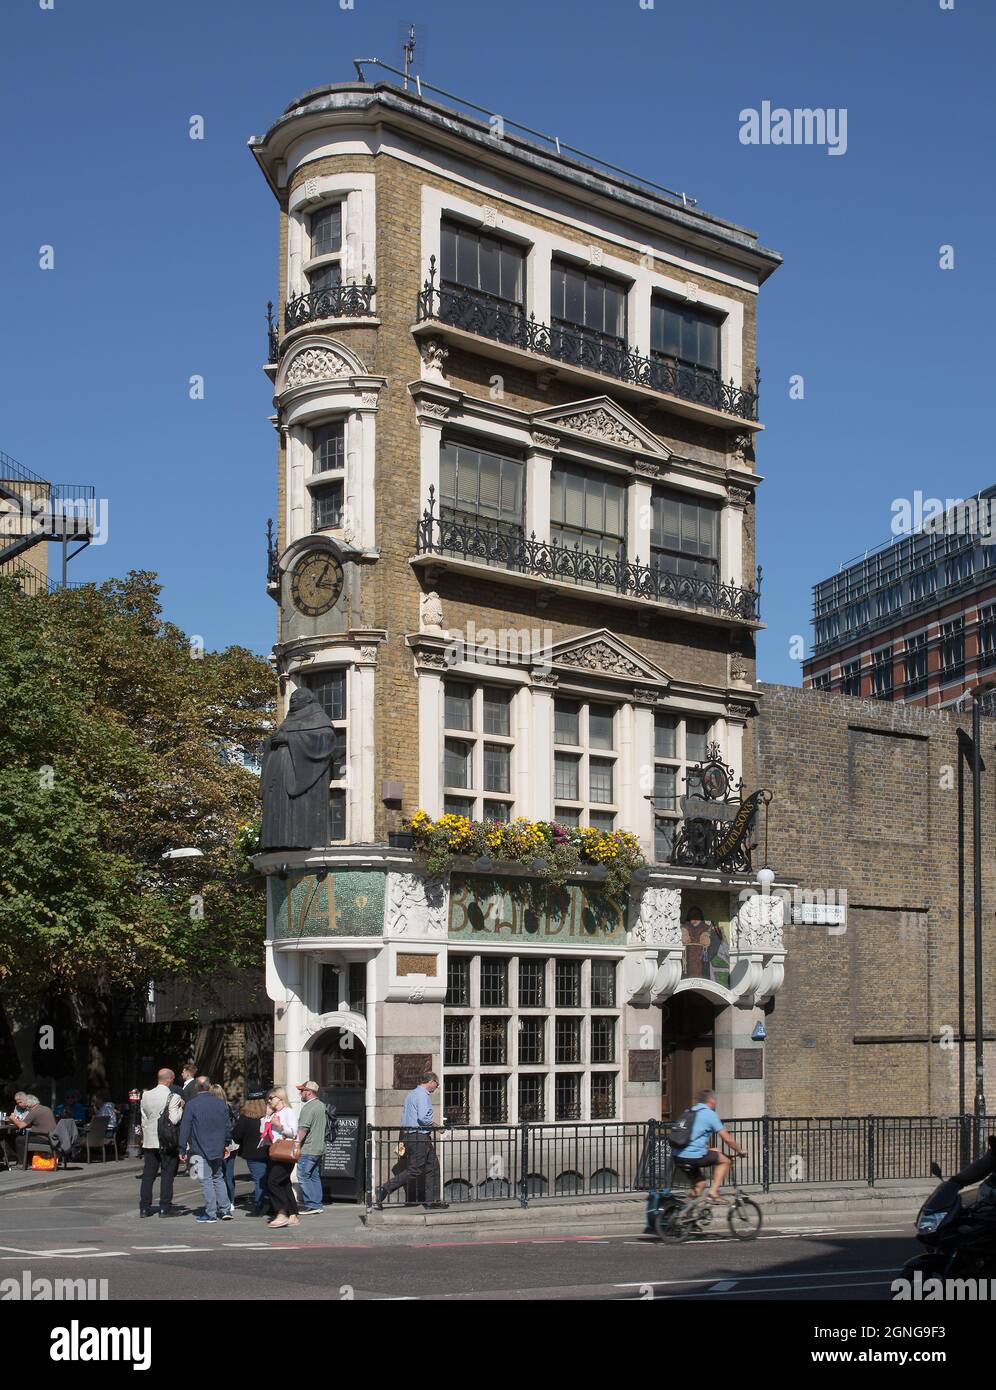 London, THE BLACK FRIAR, historisches Gasthaus in der Queen Victoria Street 174, erbaut 1875, Umbau 1905 durch Herbert Fuller-Clark Stock Photo